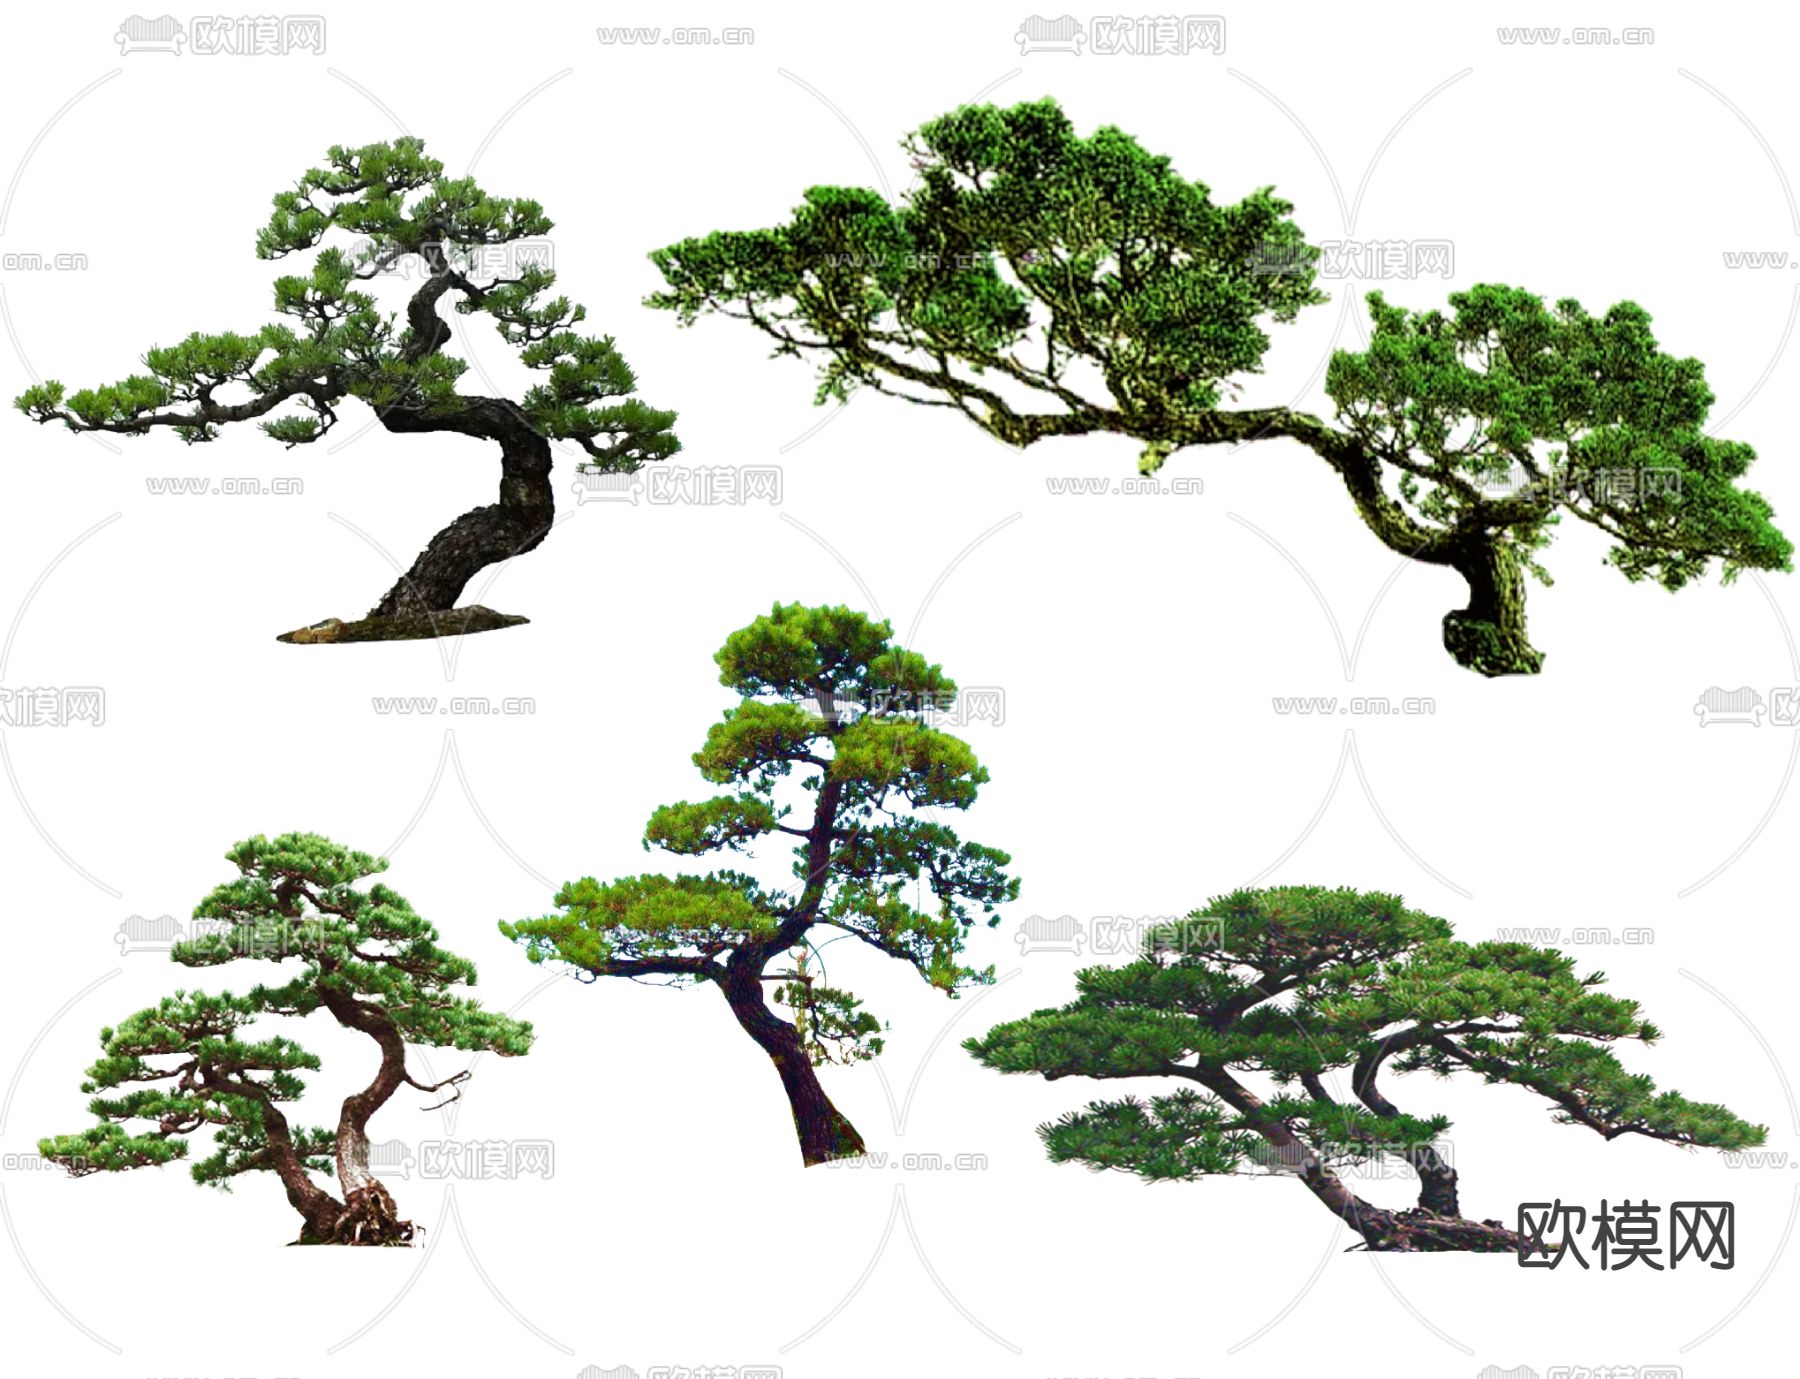 日本黑松-北方园林观赏树木-图片